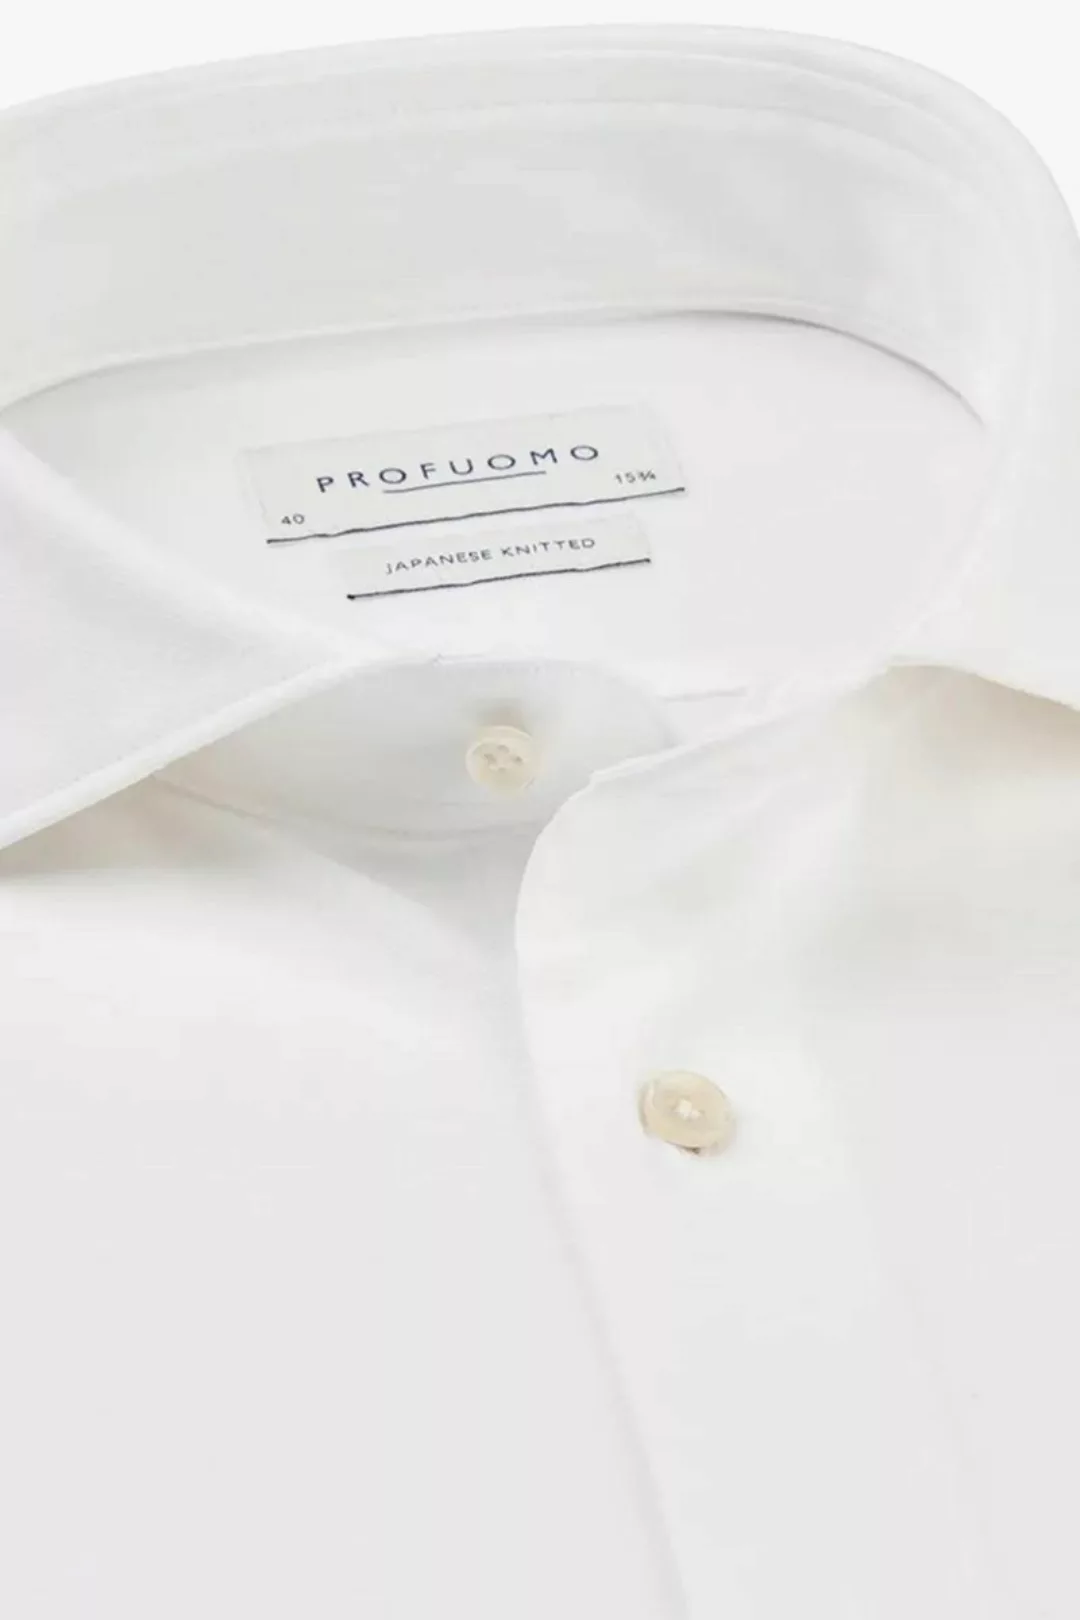 Profuomo Hemd Japanese Knitted Weiß - Größe 42 günstig online kaufen